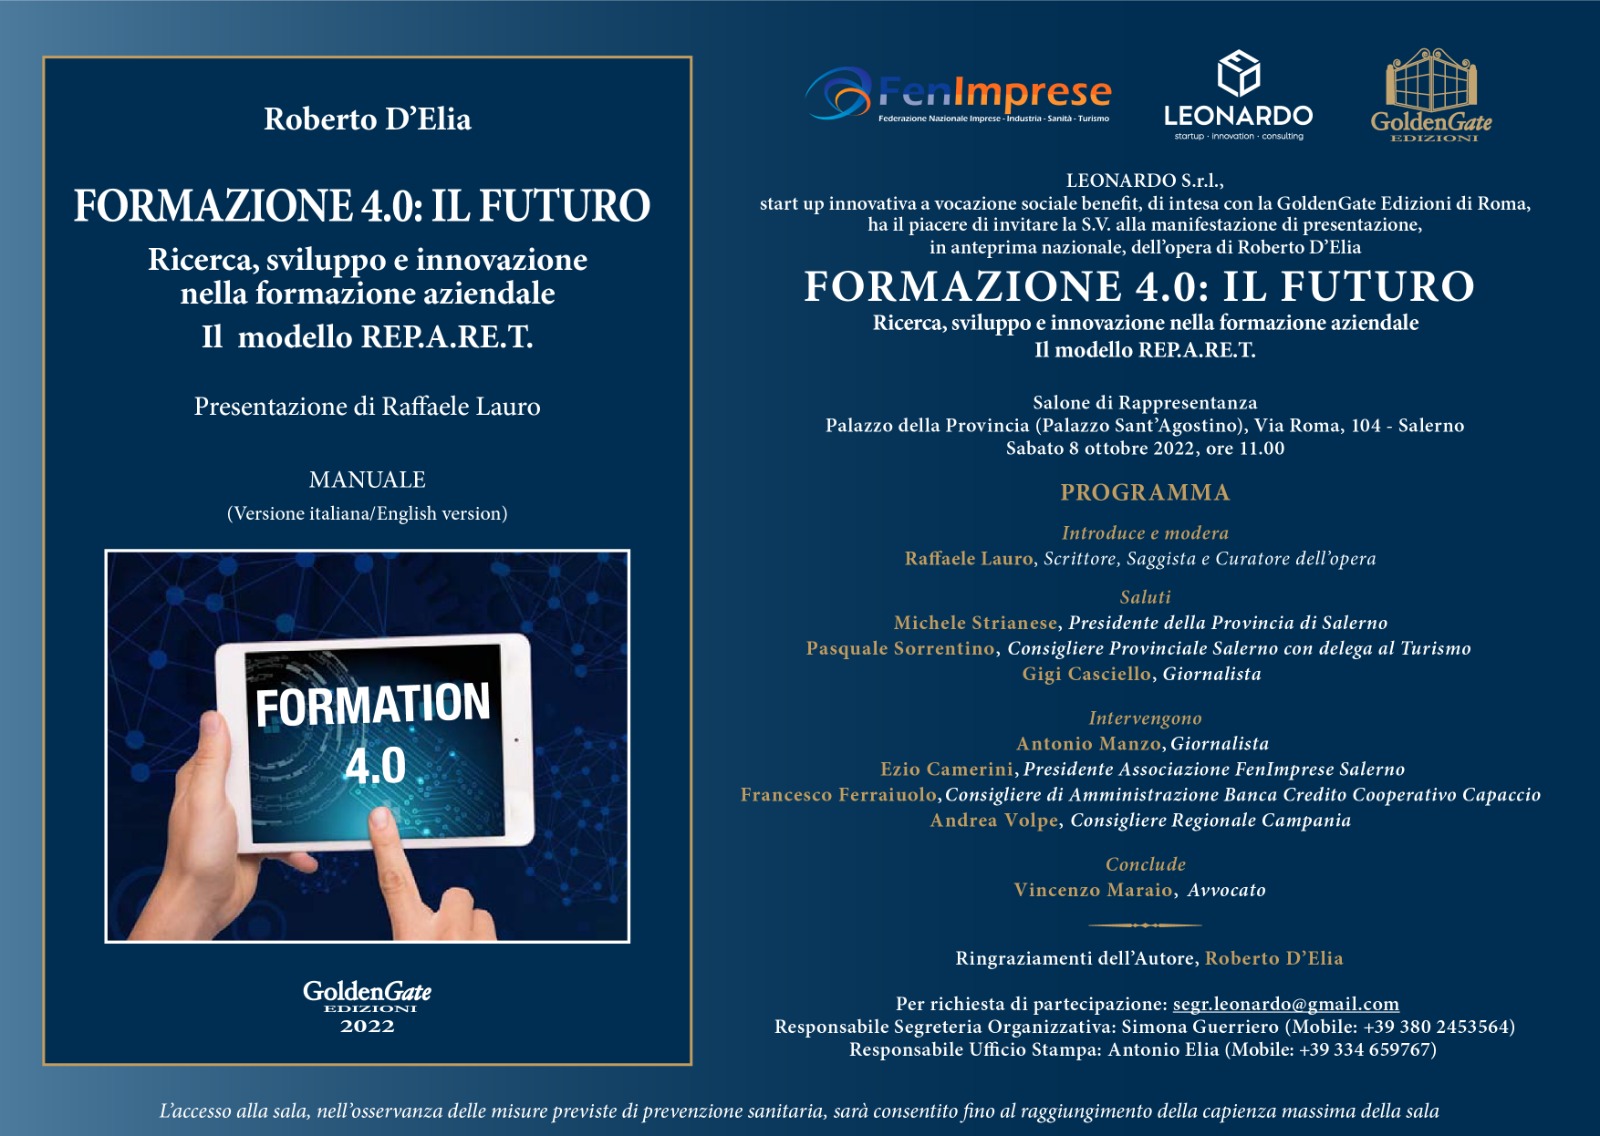 Sabato 8 ottobre alla Provincia Di Salerno la presentazione del libro sulla Formazione 4.0 di Roberto D’Elia con il supporto di Fenimprese Salerno